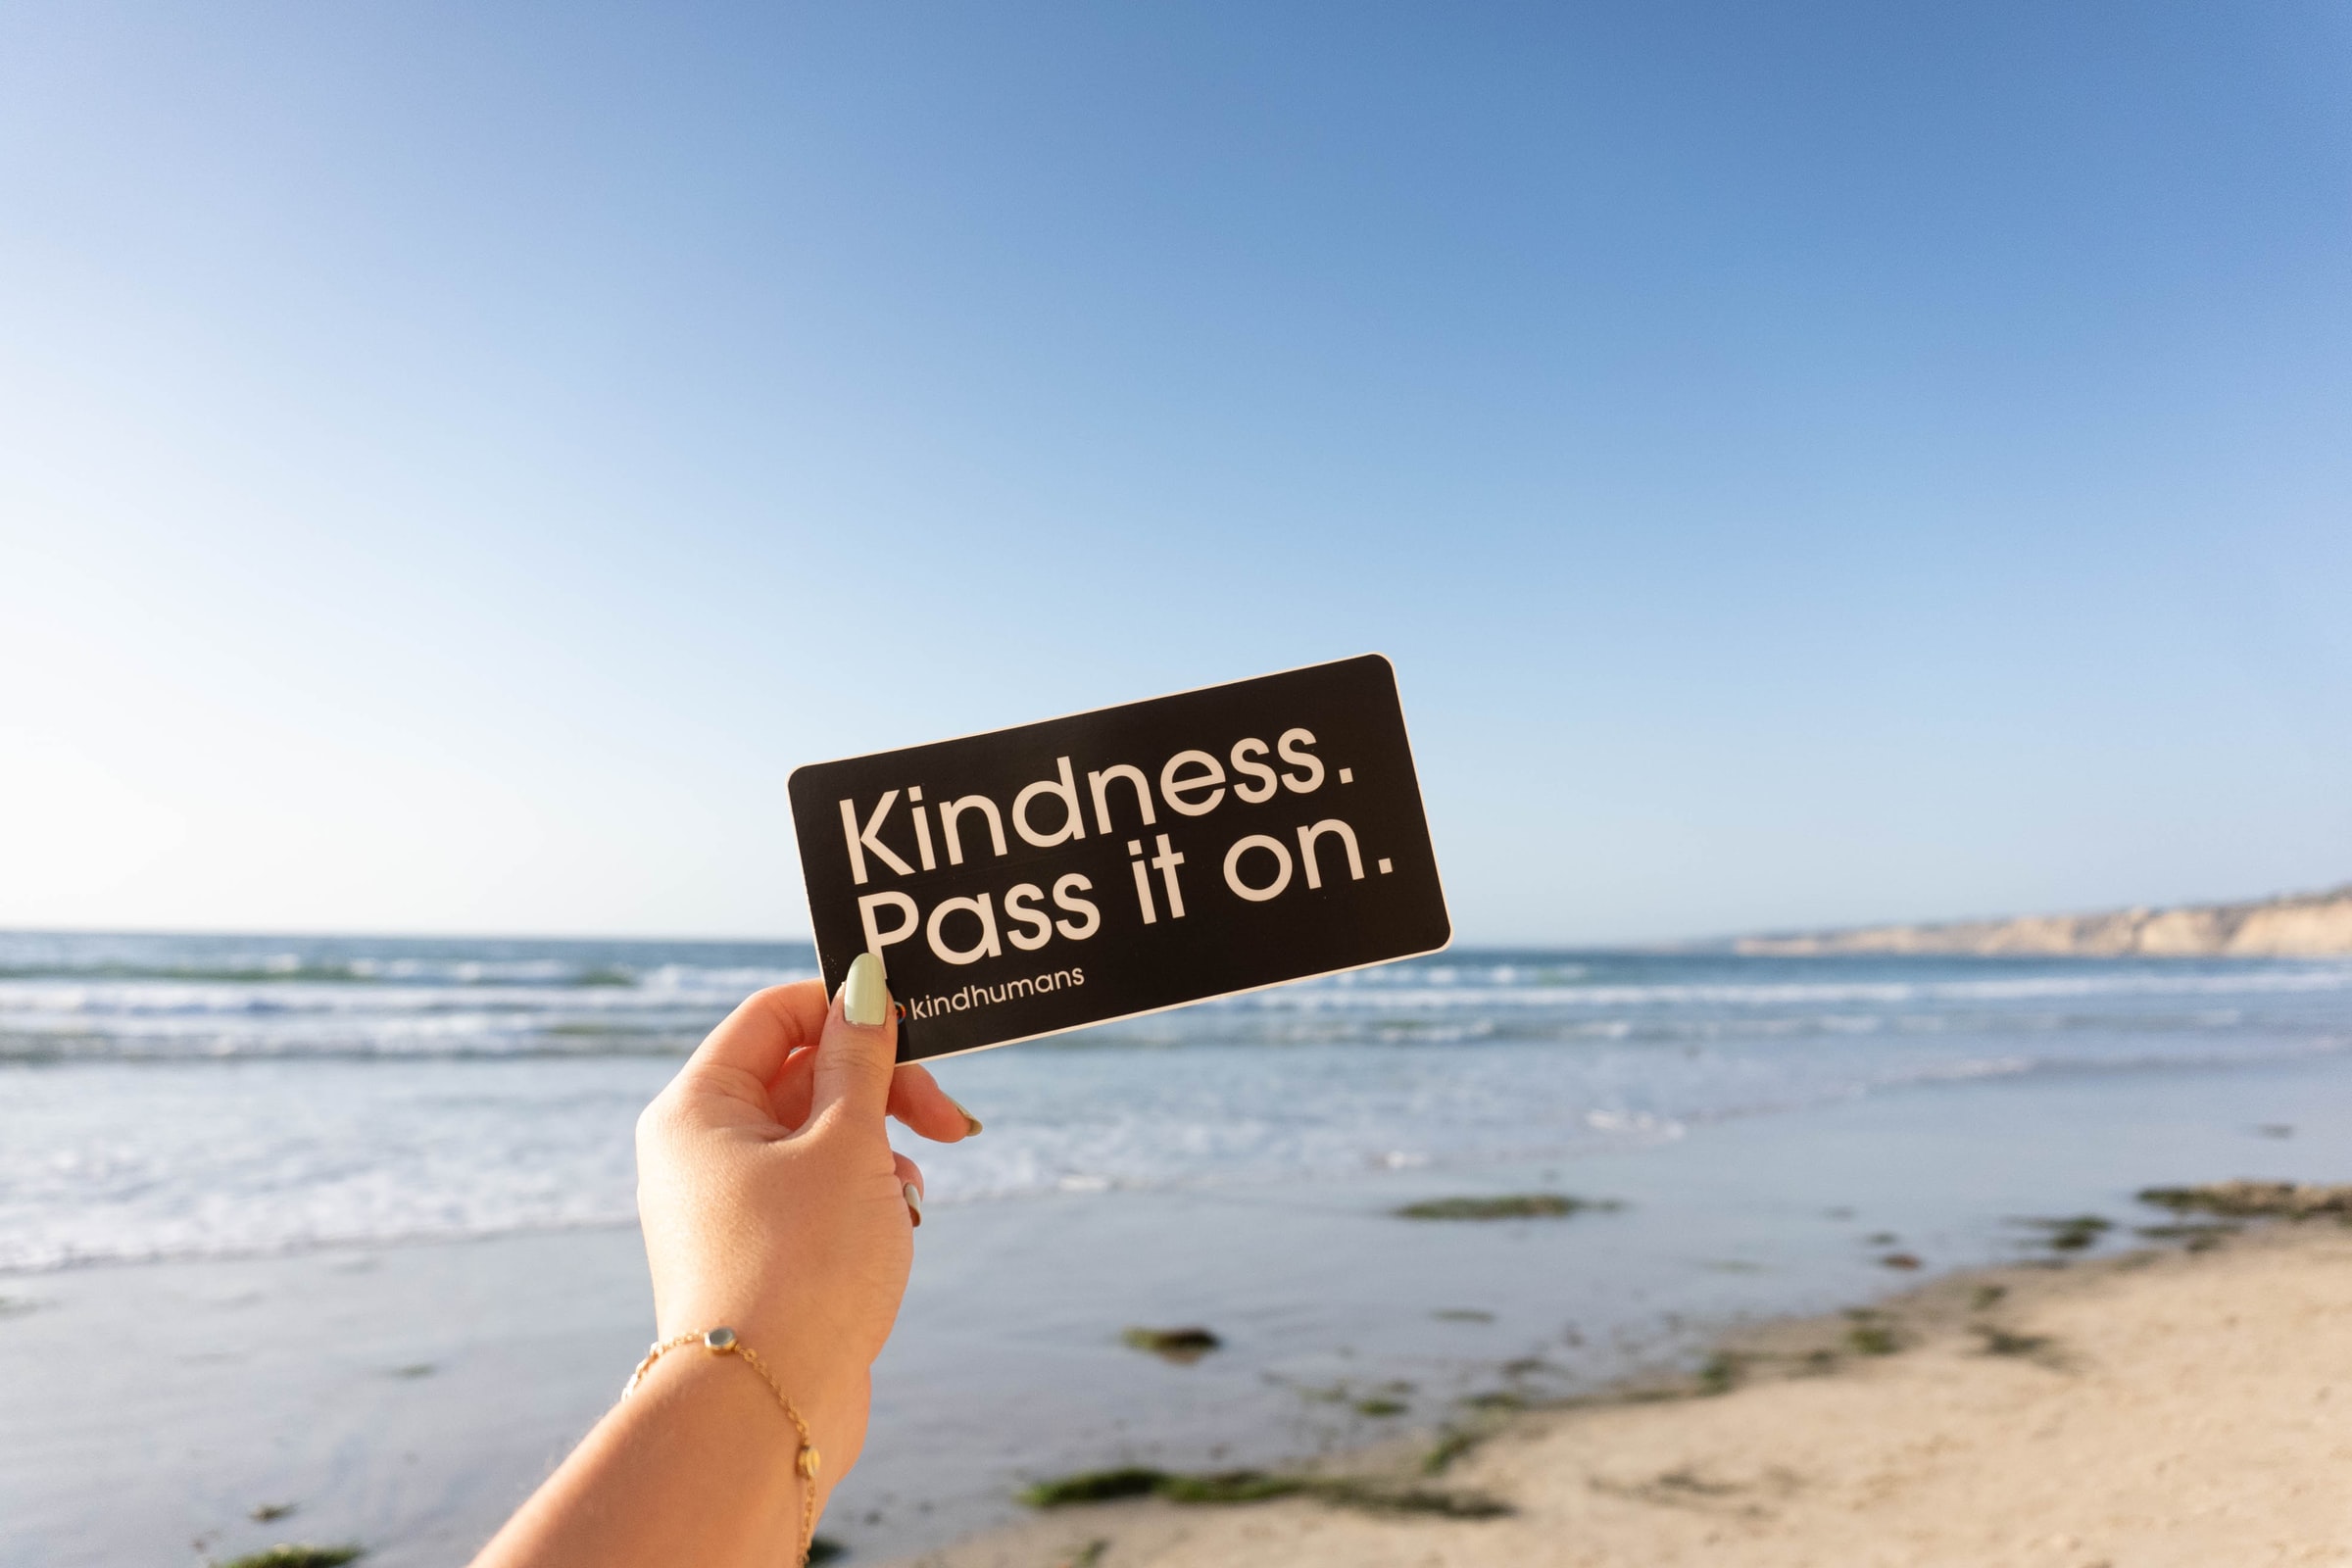 Ways to spread kindness